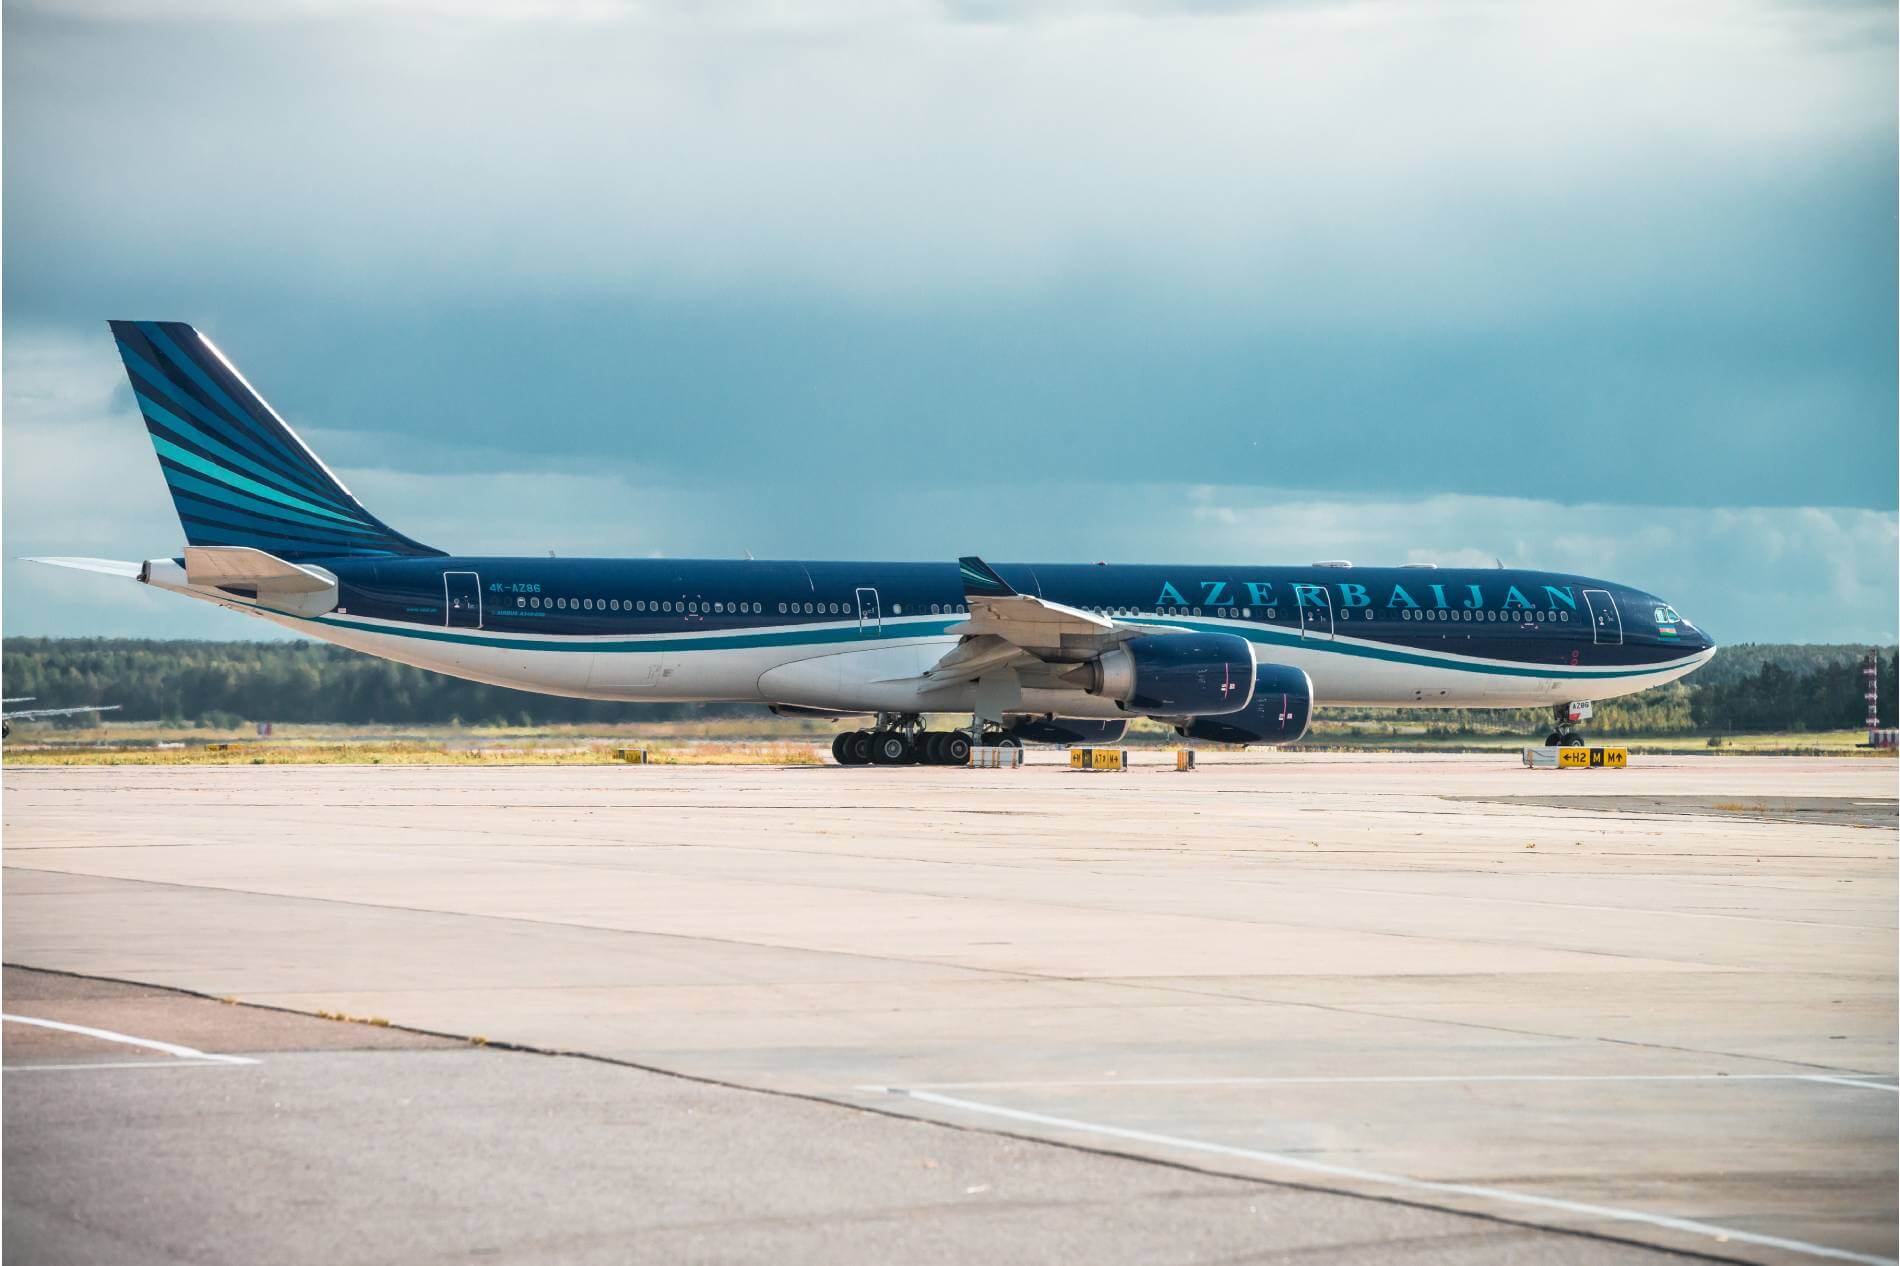 Azerbaijan Airlines Airbus A340-500